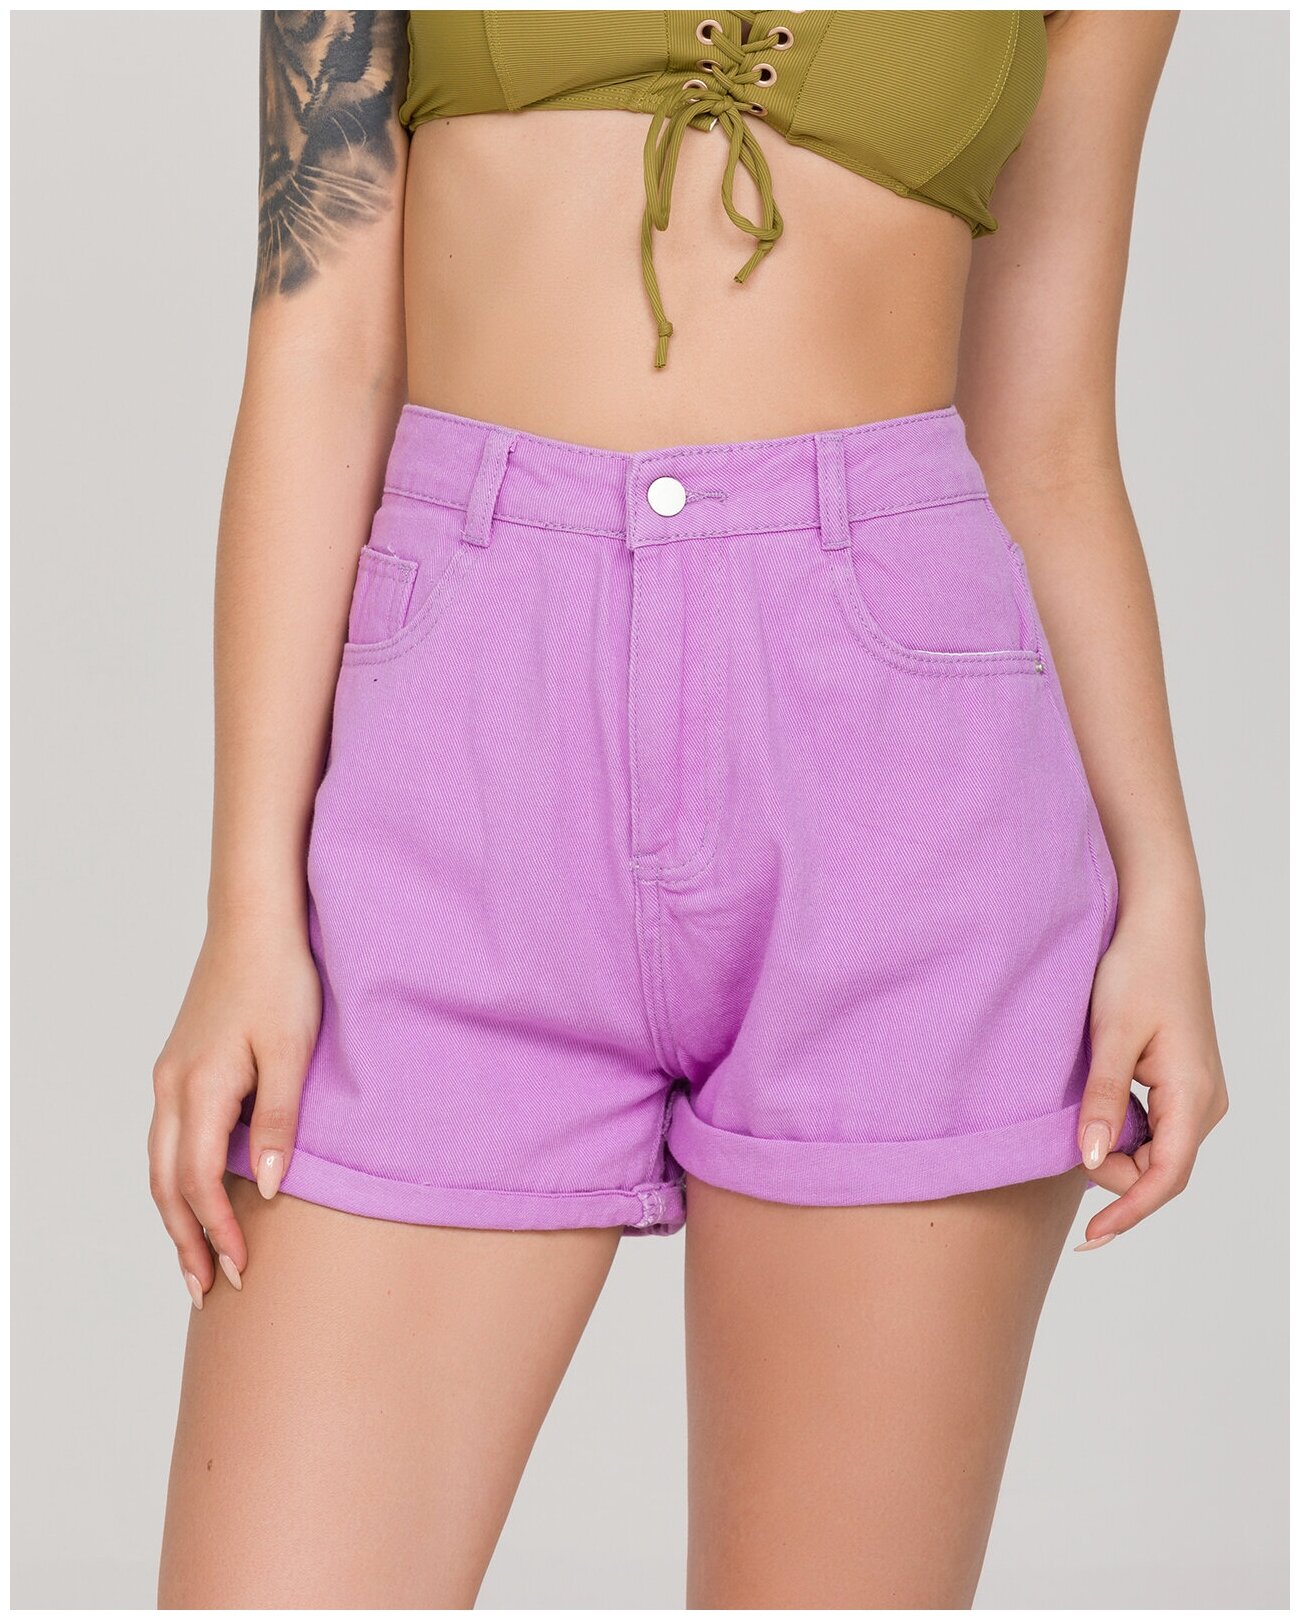 Джинсовые шорты женские KATOMI 100002191 фиолетовые 36